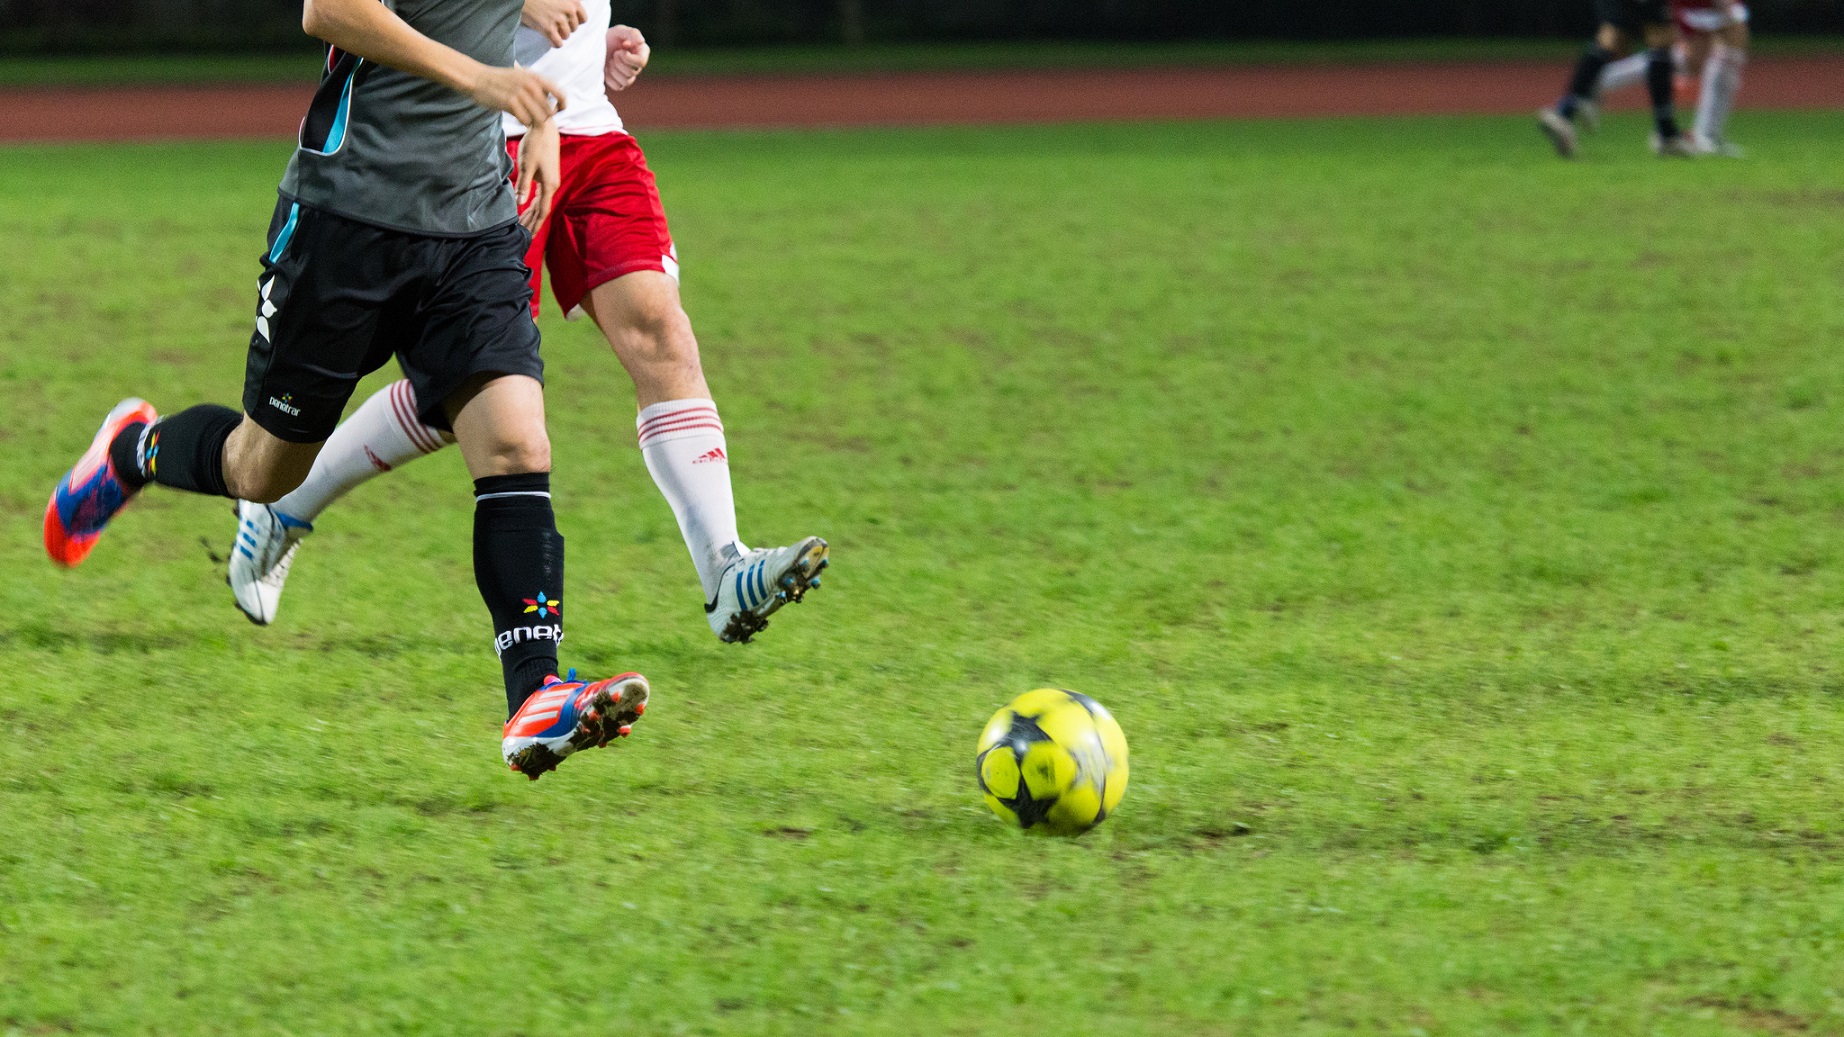 Les muscles ischio-jambiers sont sollicités dans nombre de sports, tel le football. © See-ming Lee, Flickr, CC by 2.0